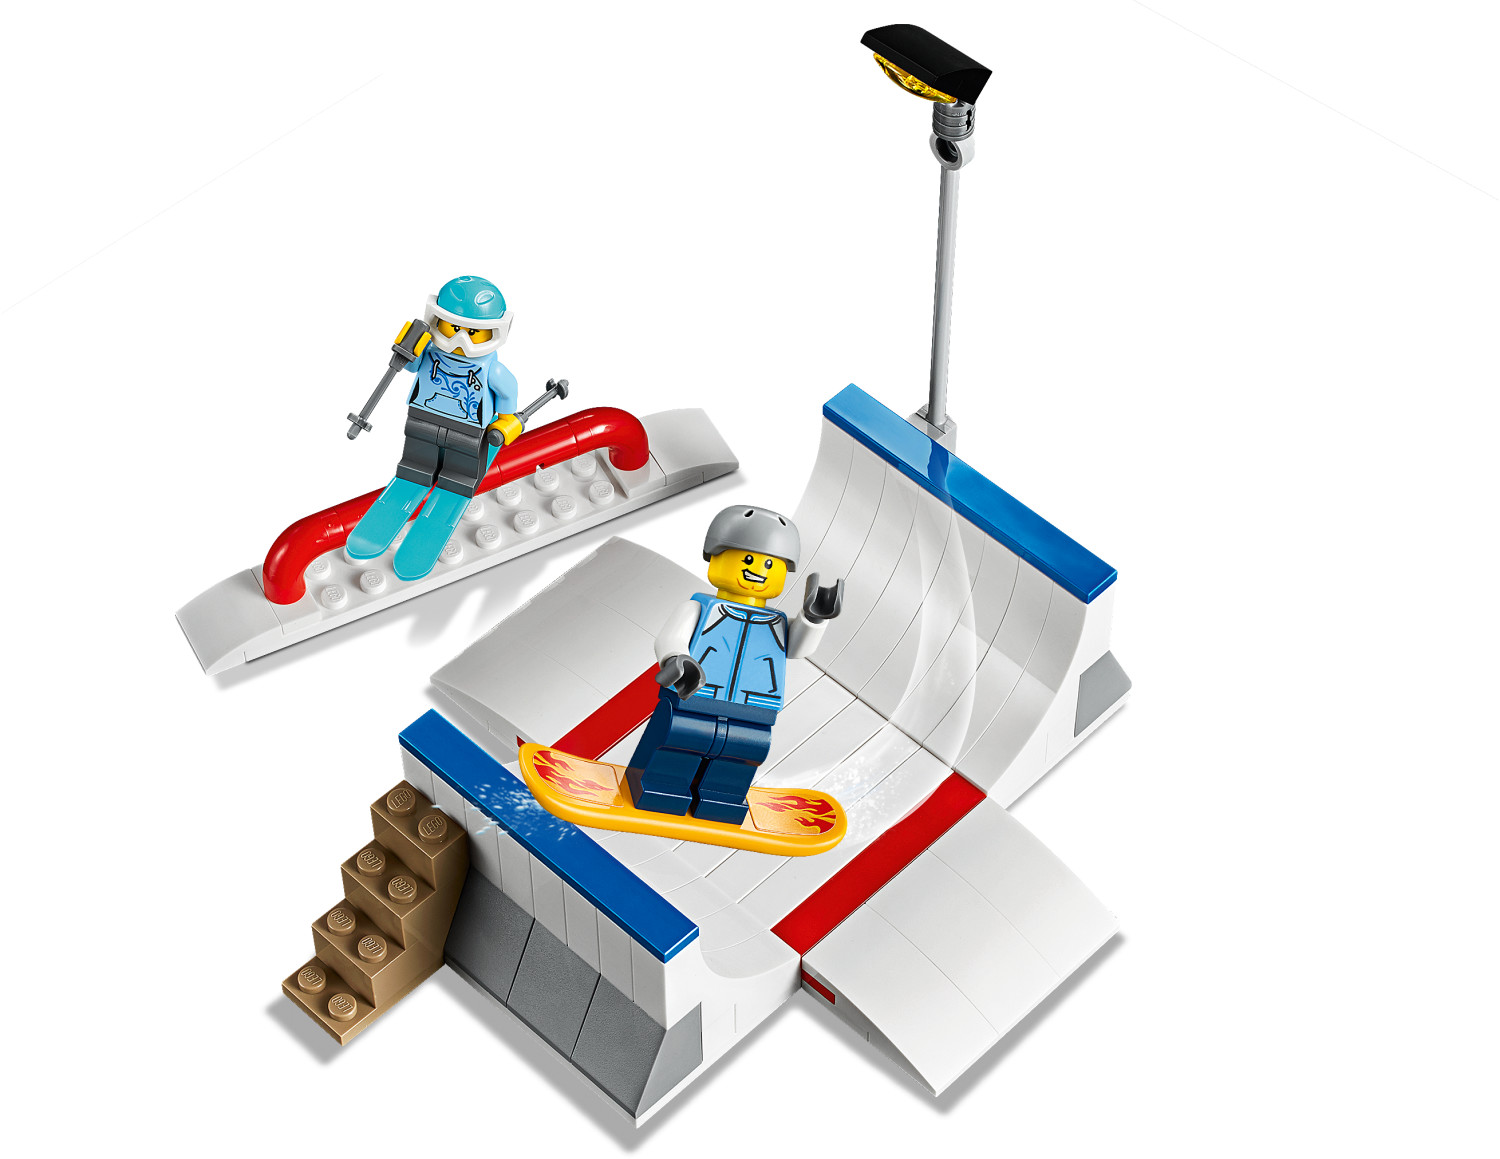 LEGO-La Station City Décor de Sports d'hiver Incluant Un Poste de